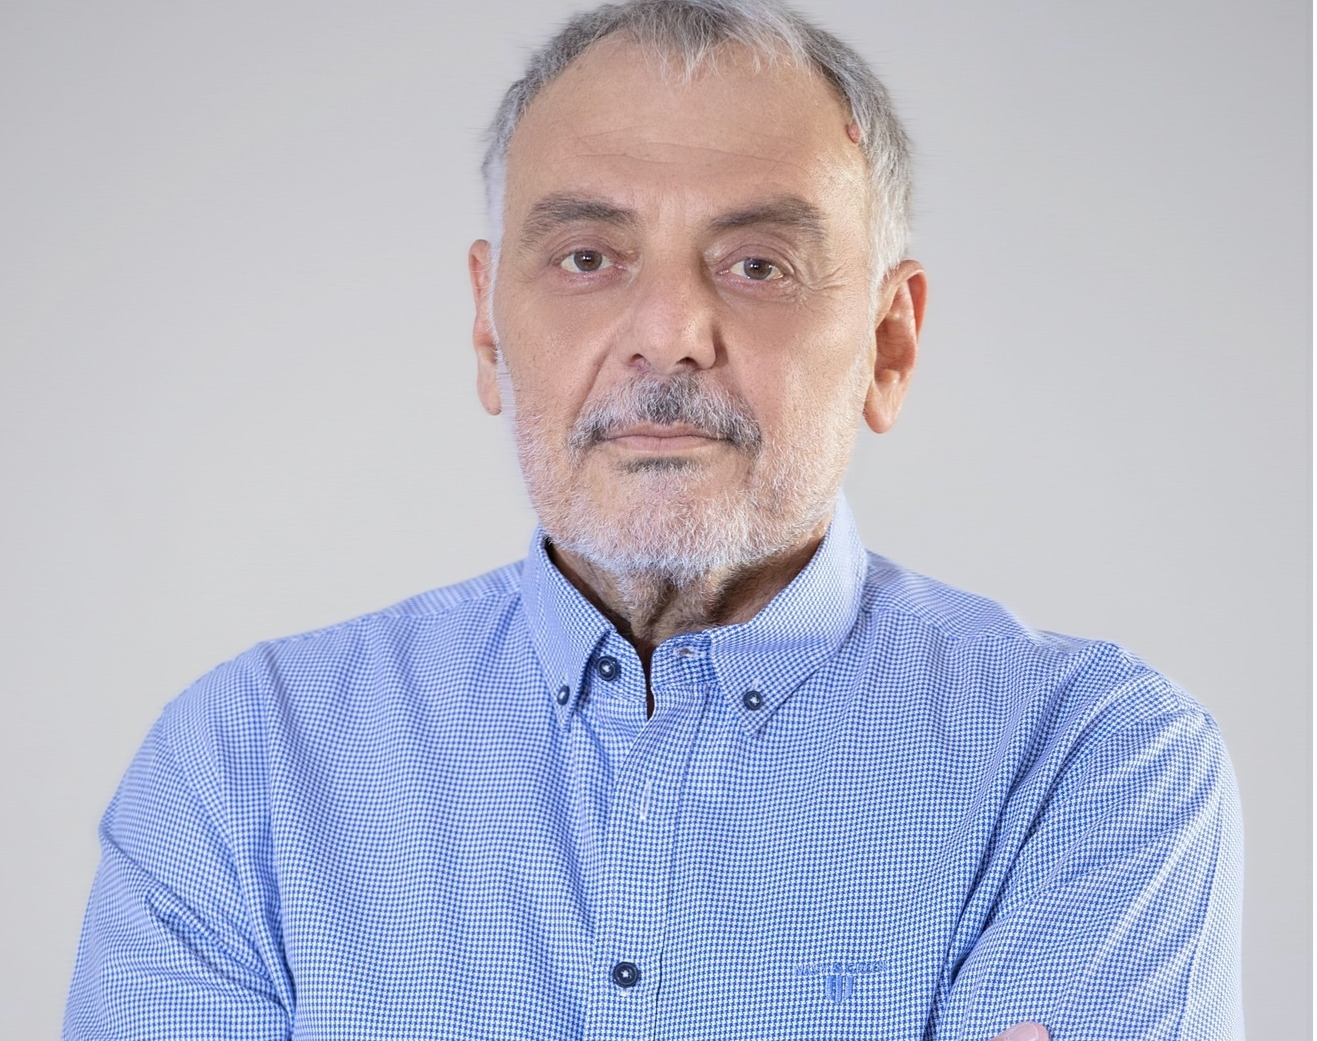 Πέθανε ο Βασίλης Τοπαλλιανίδης, υποψήφιος Δήμαρχος του ΚΚΕ στις Αχαρνές